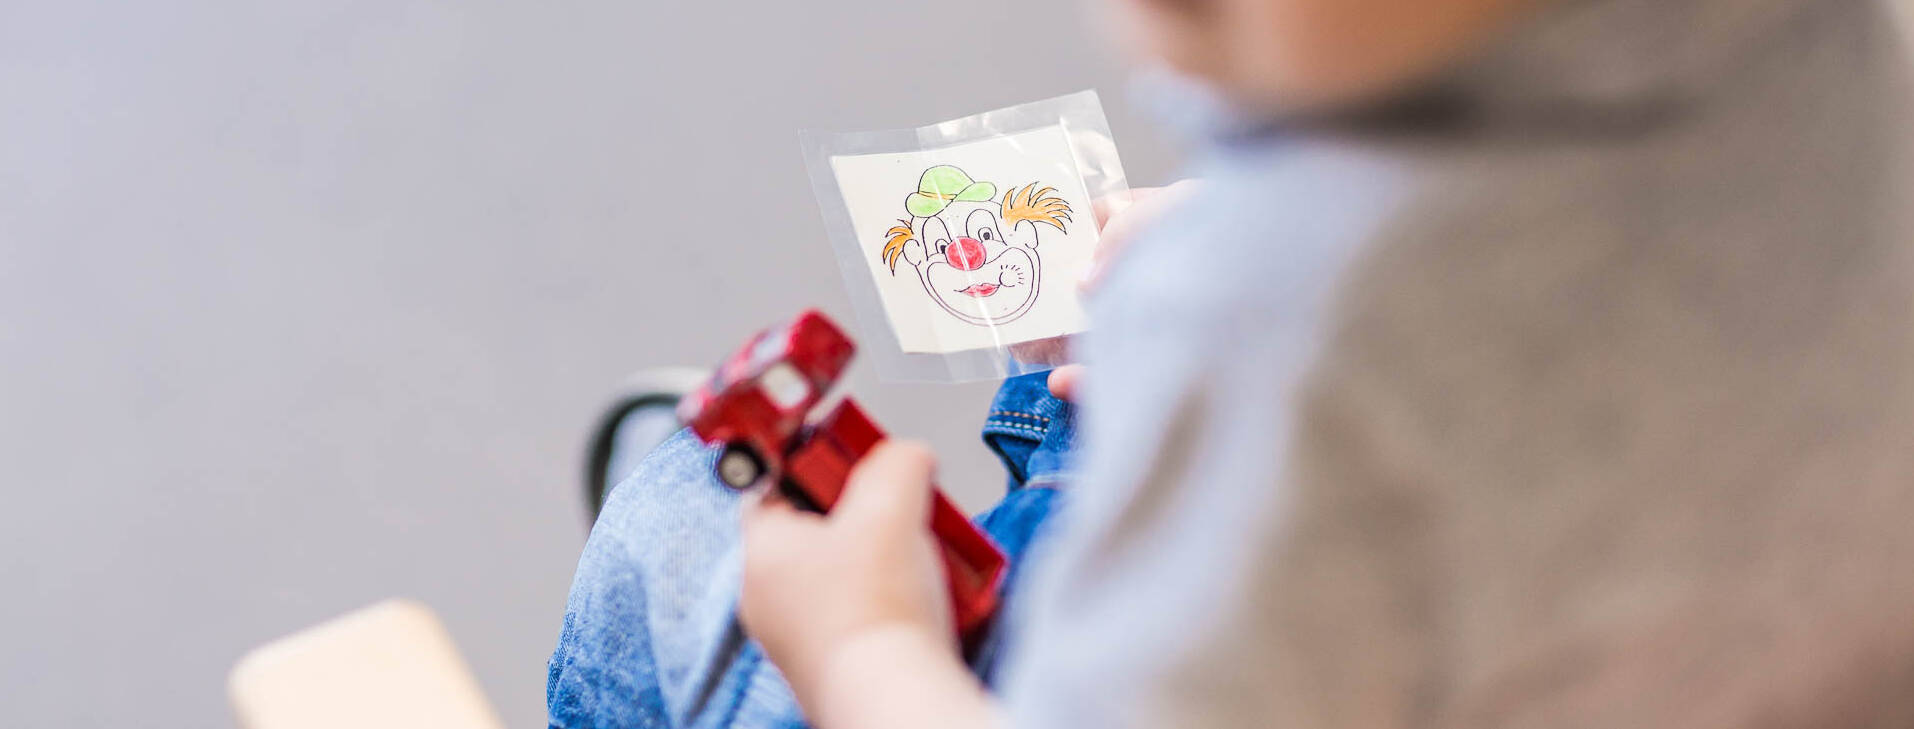 Ein Kind hat ein Bild von einem Clow in der Hand